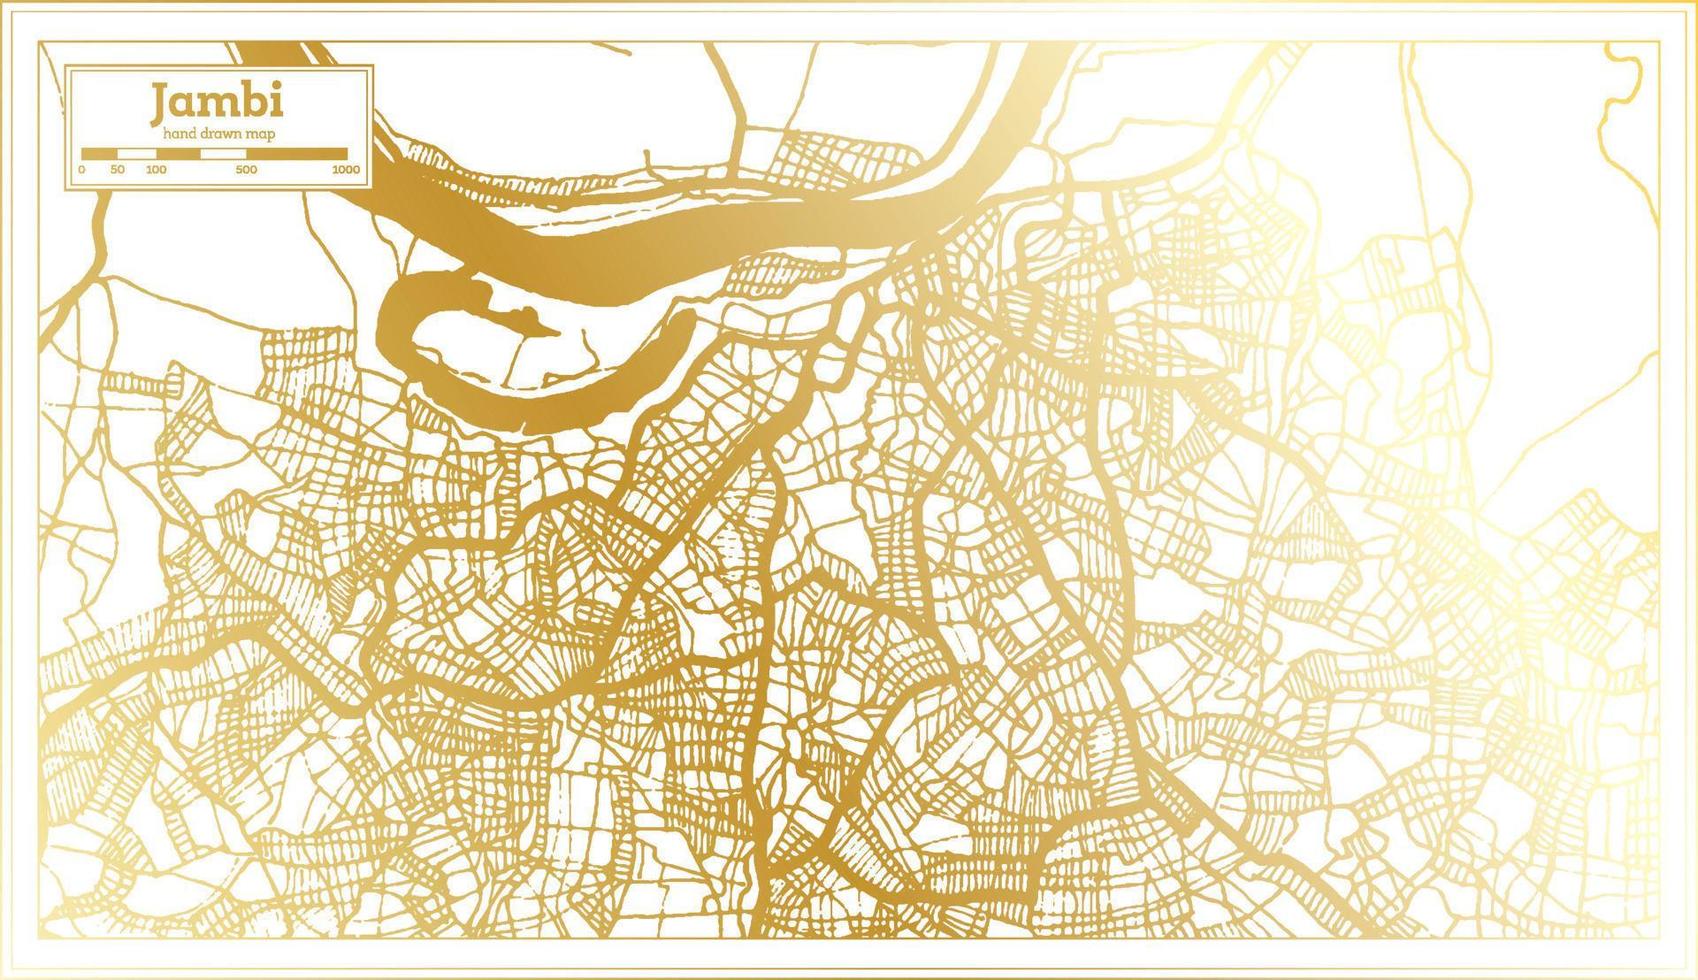 plan de la ville de jambi indonésie dans un style rétro de couleur dorée. carte muette. vecteur